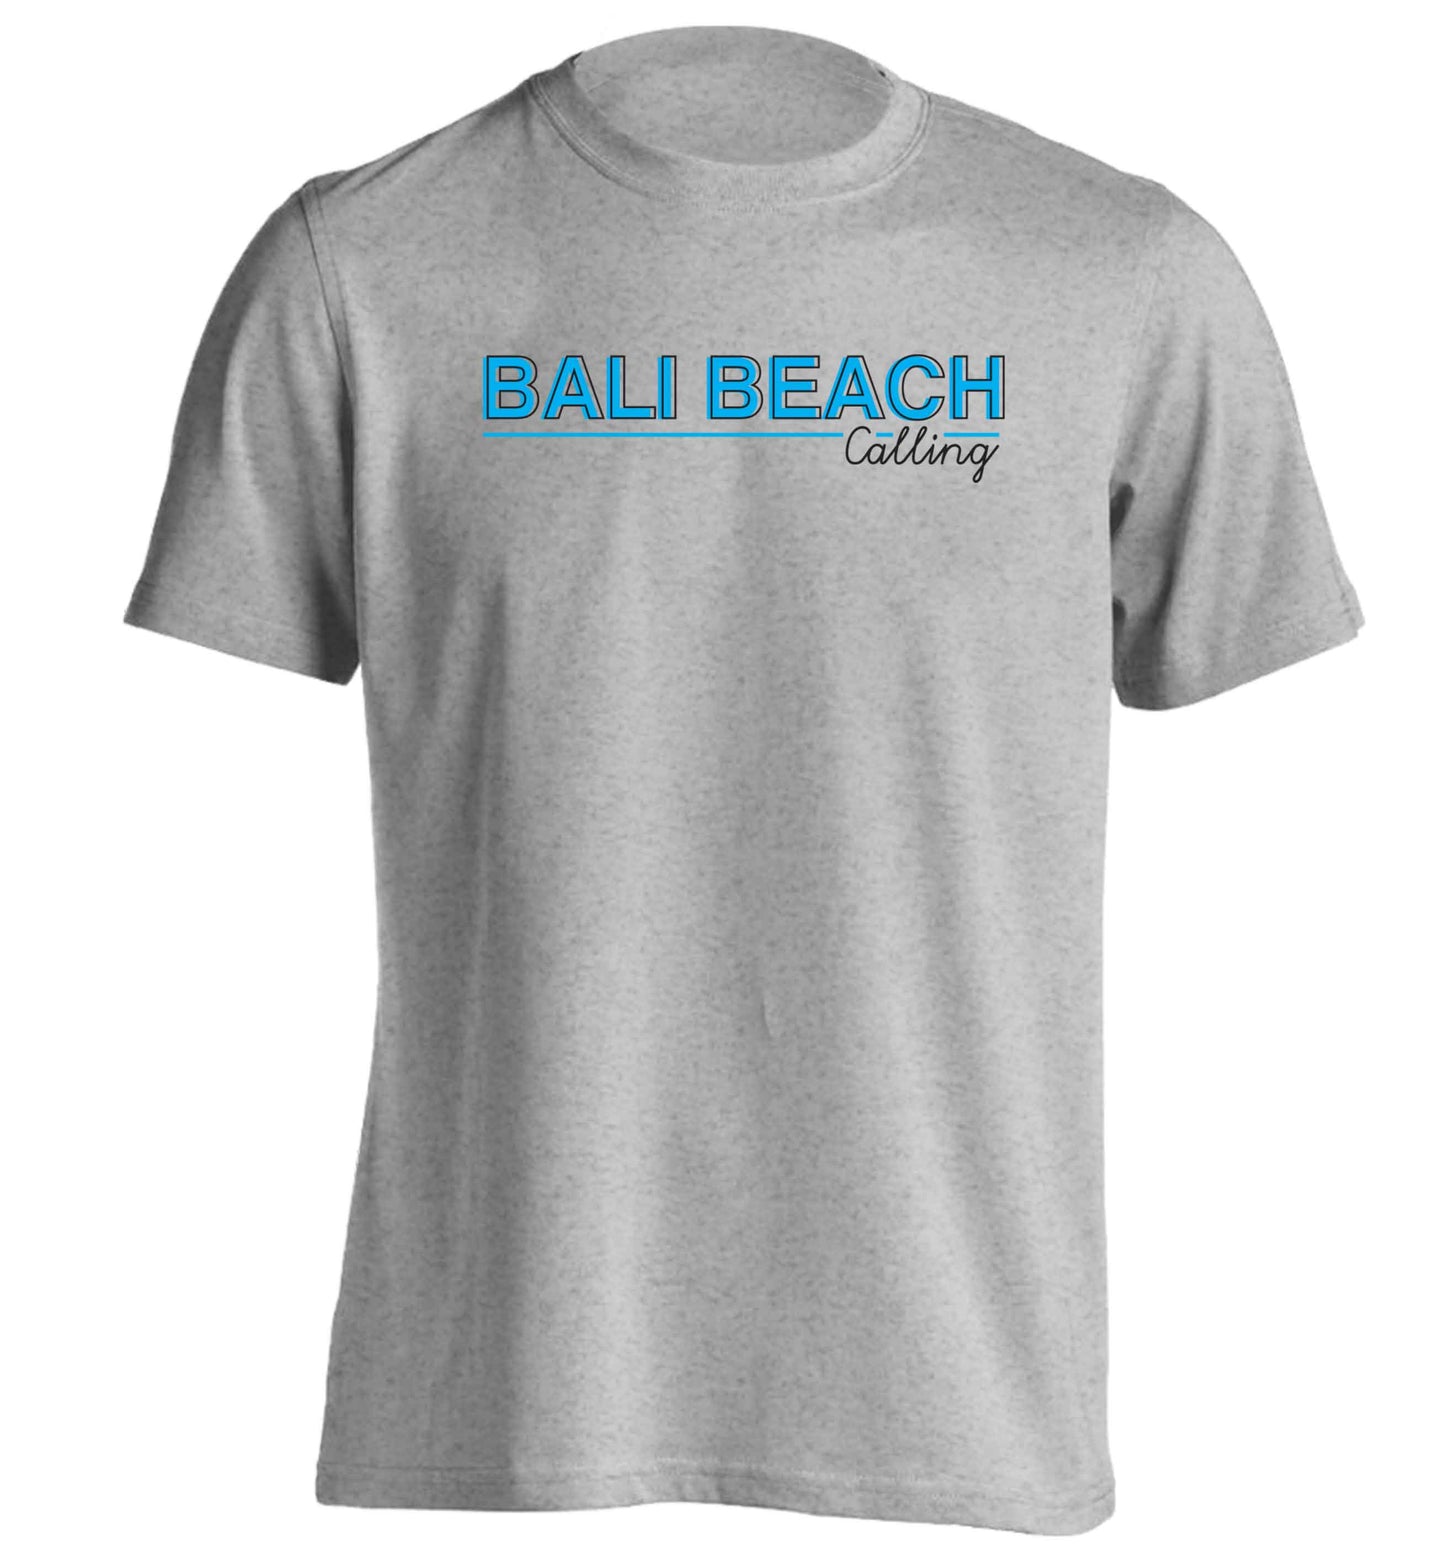 Bali beach calling adults unisex grey Tshirt 2XL